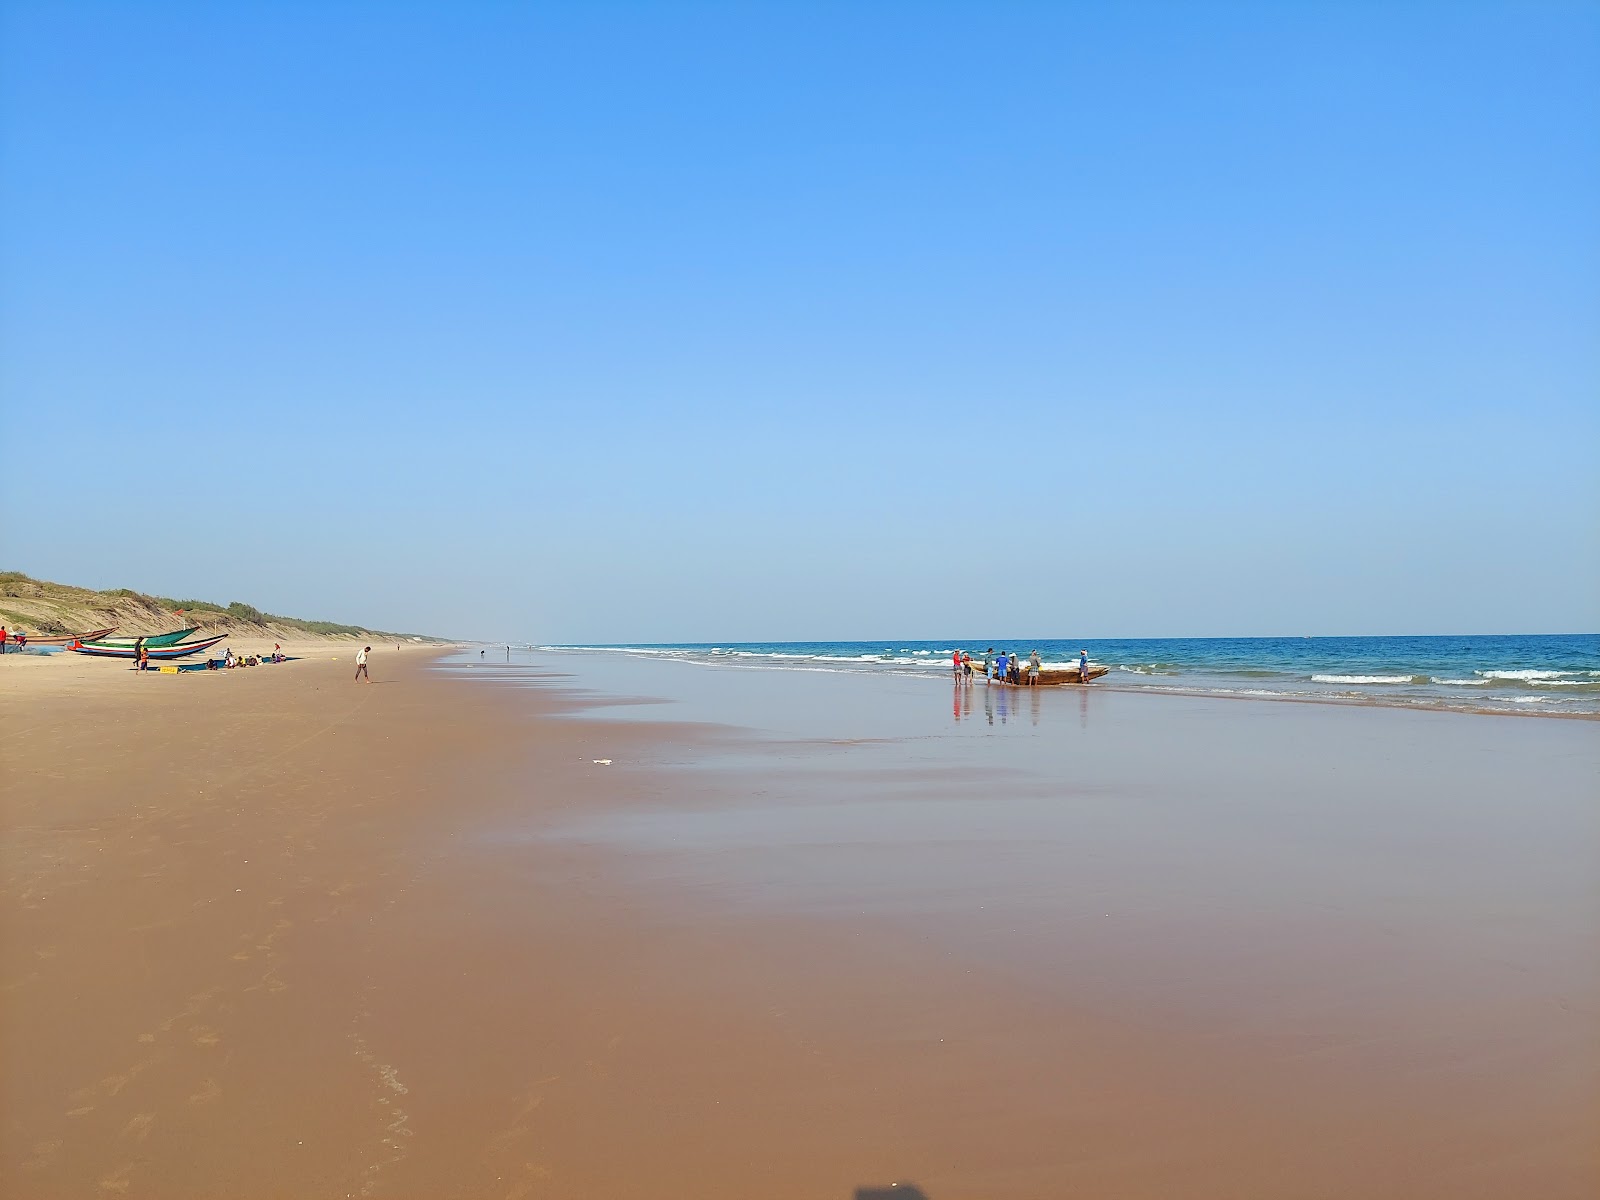 Garampeta Beach'in fotoğrafı parlak kum yüzey ile